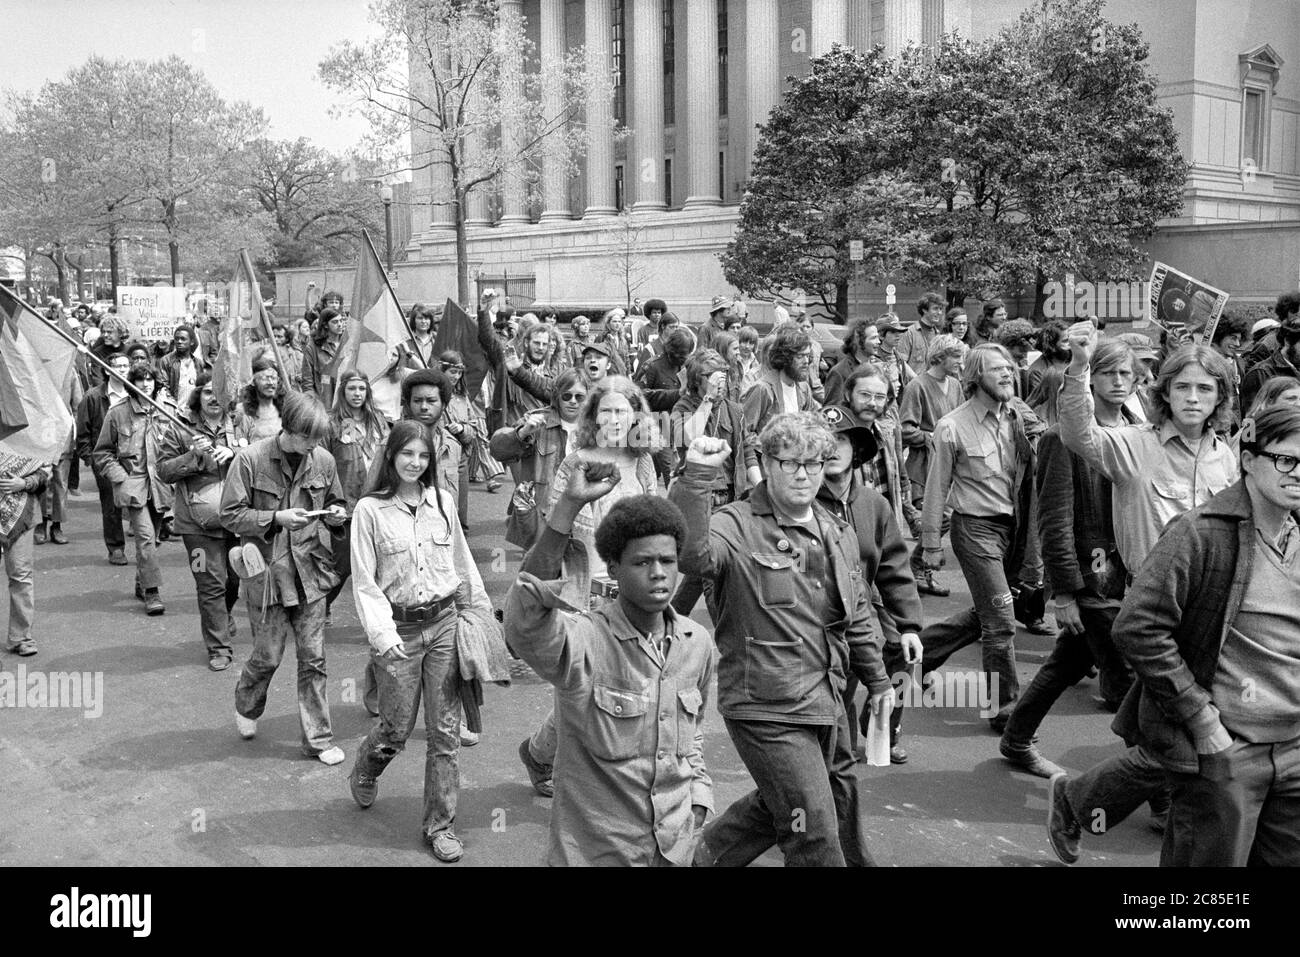 Manifestants anti-guerre près du bâtiment du ministère de la Justice, Washington, D.C., États-Unis, Warren K. Leffler, 30 avril 1971 Banque D'Images